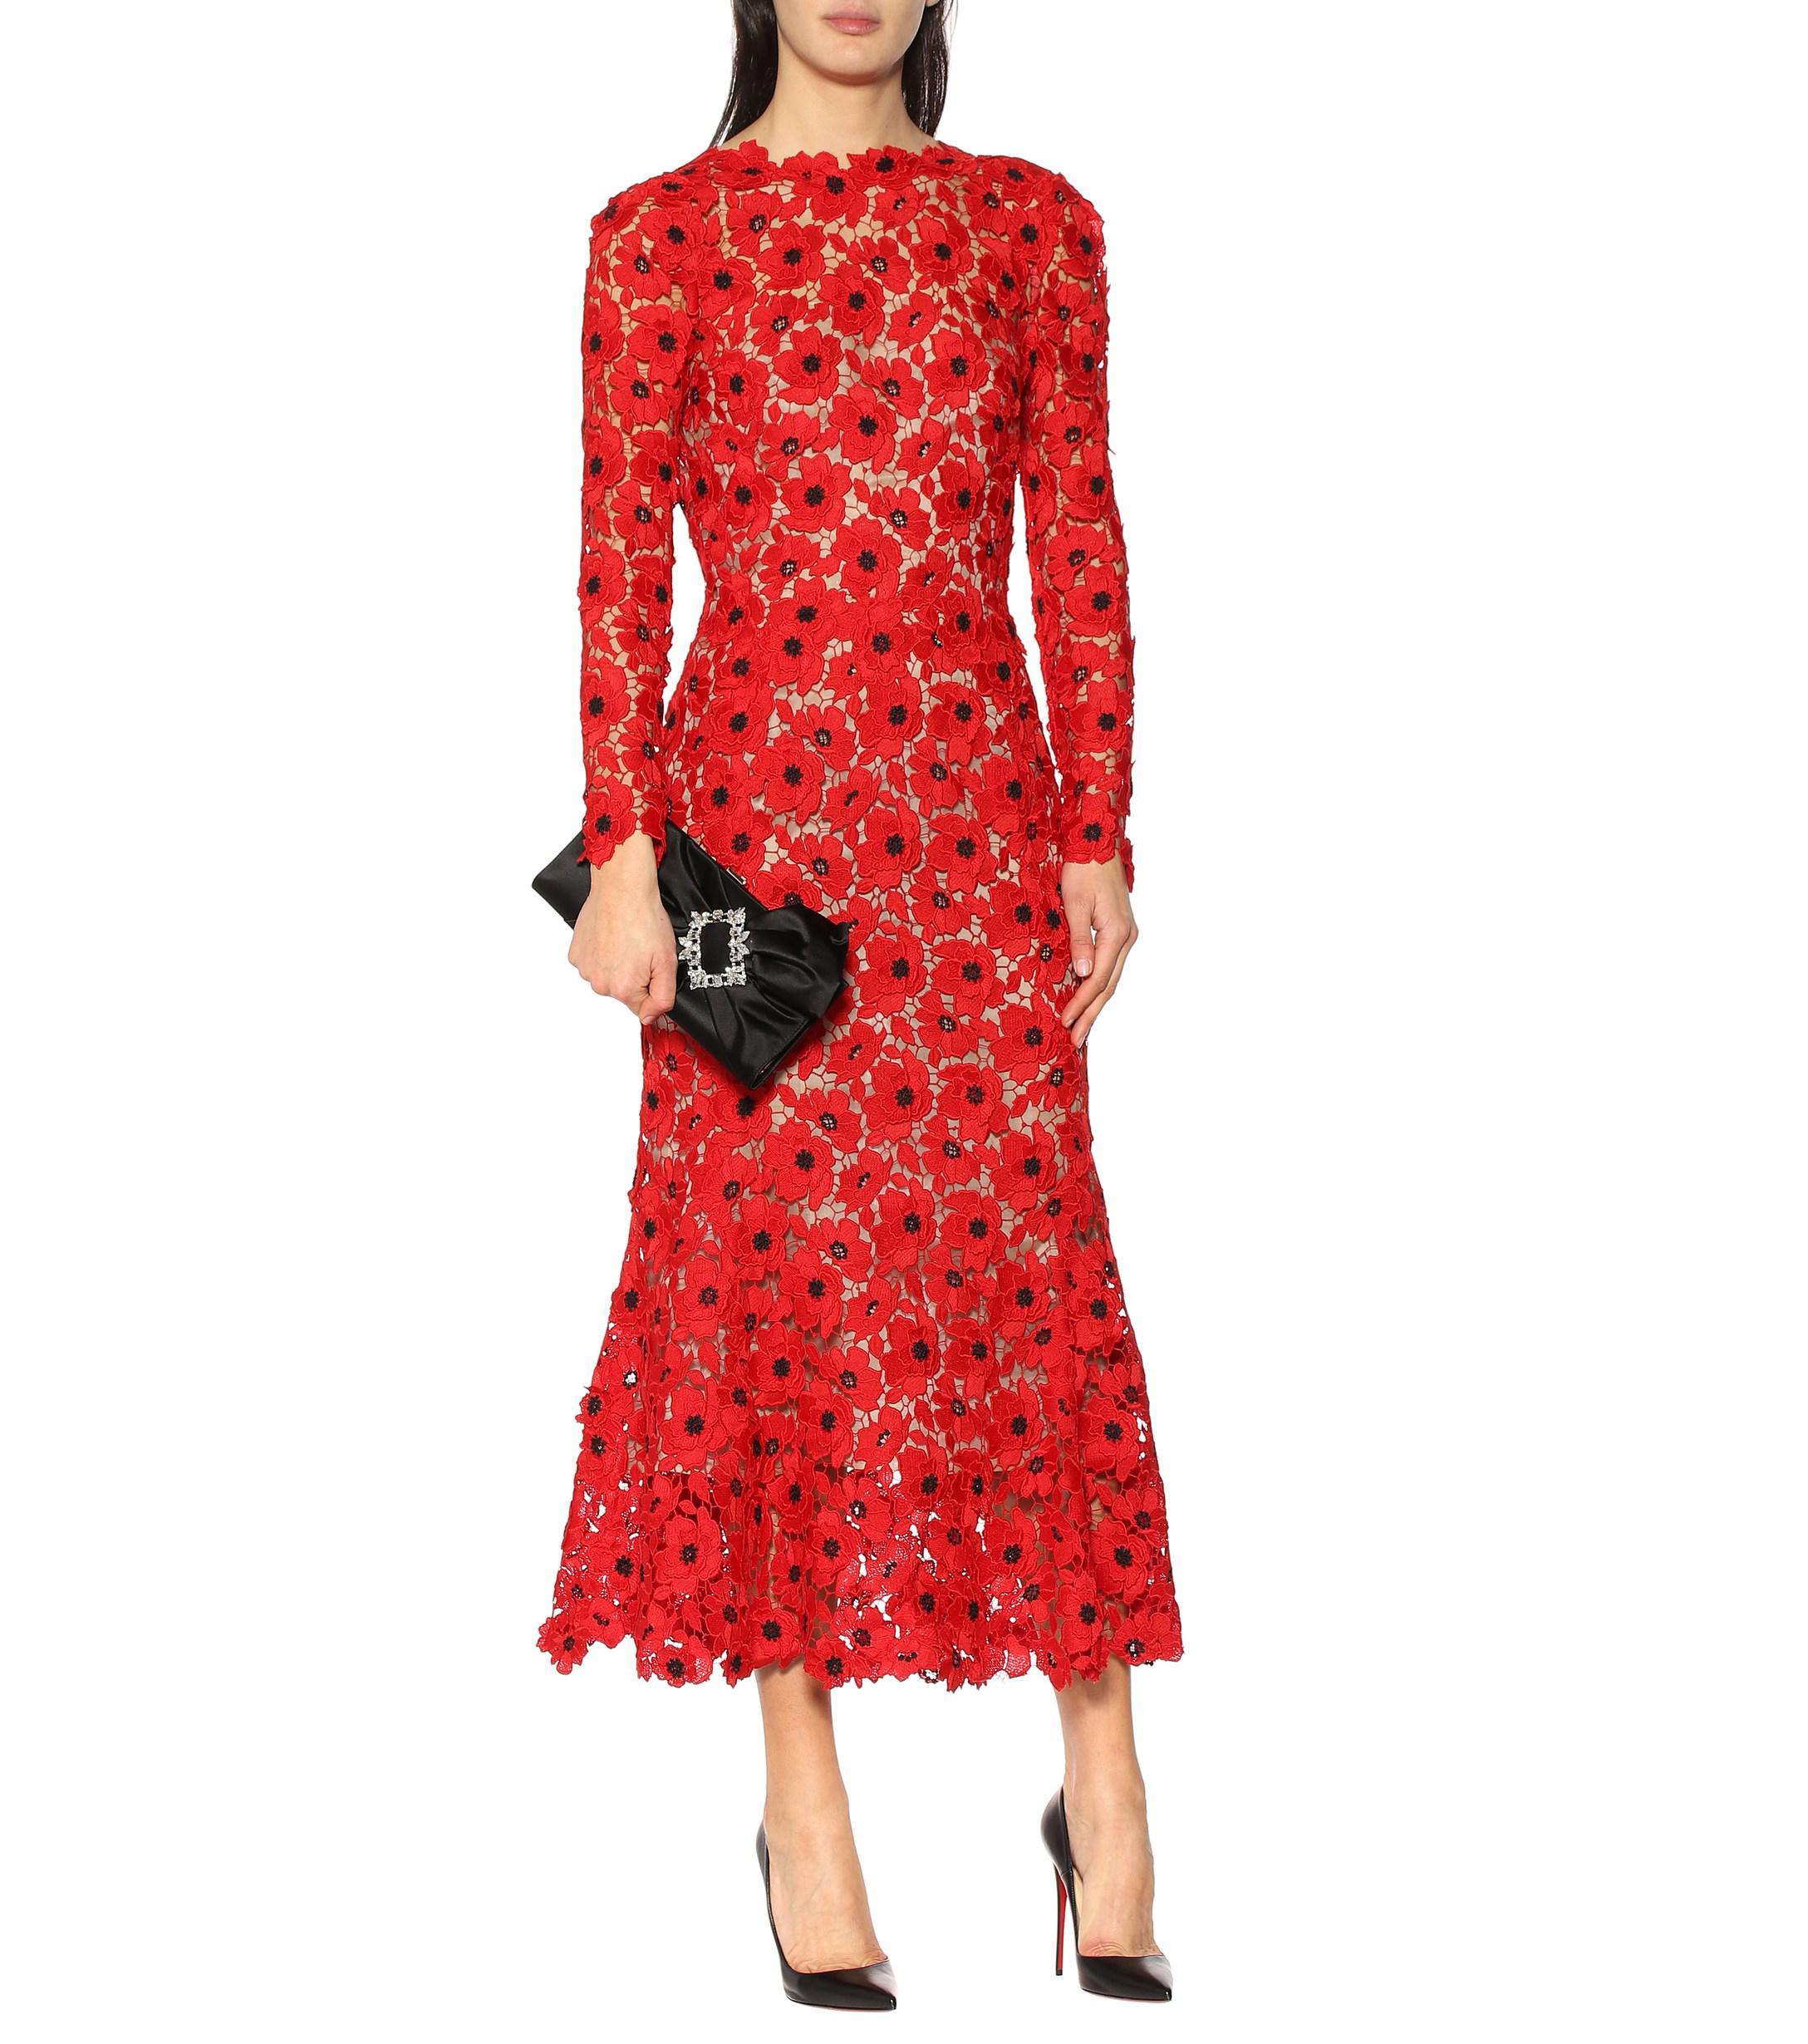 Oscar de la Renta Floral Guipure Lace Dress in Red - Lyst